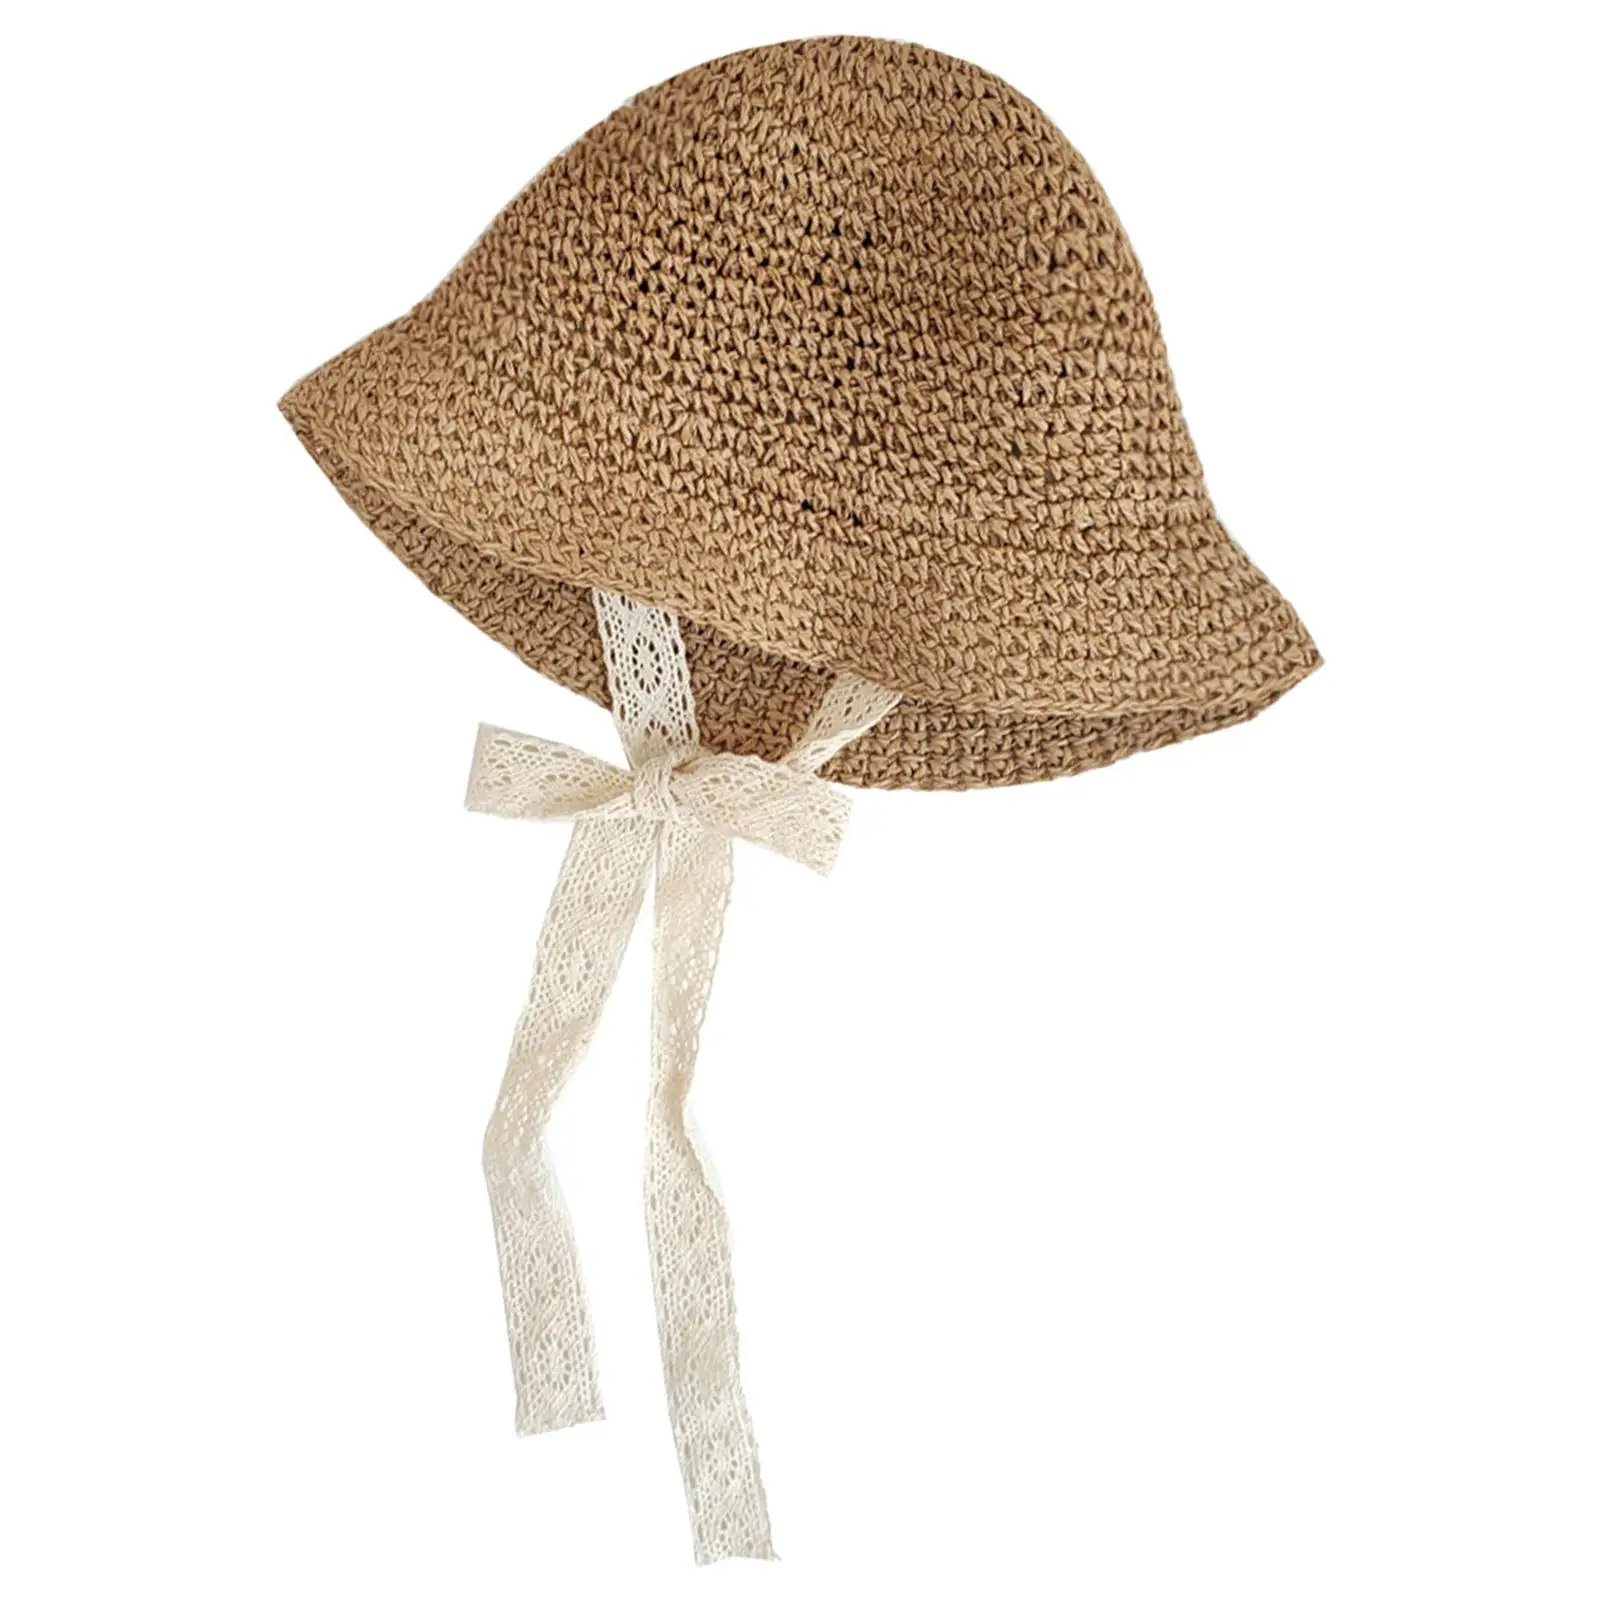  Hat Floppy Summer  Chain Strap Wide Brim Straw Hat Sun Protection Beach Children Panama Hat Baby Girl Caps